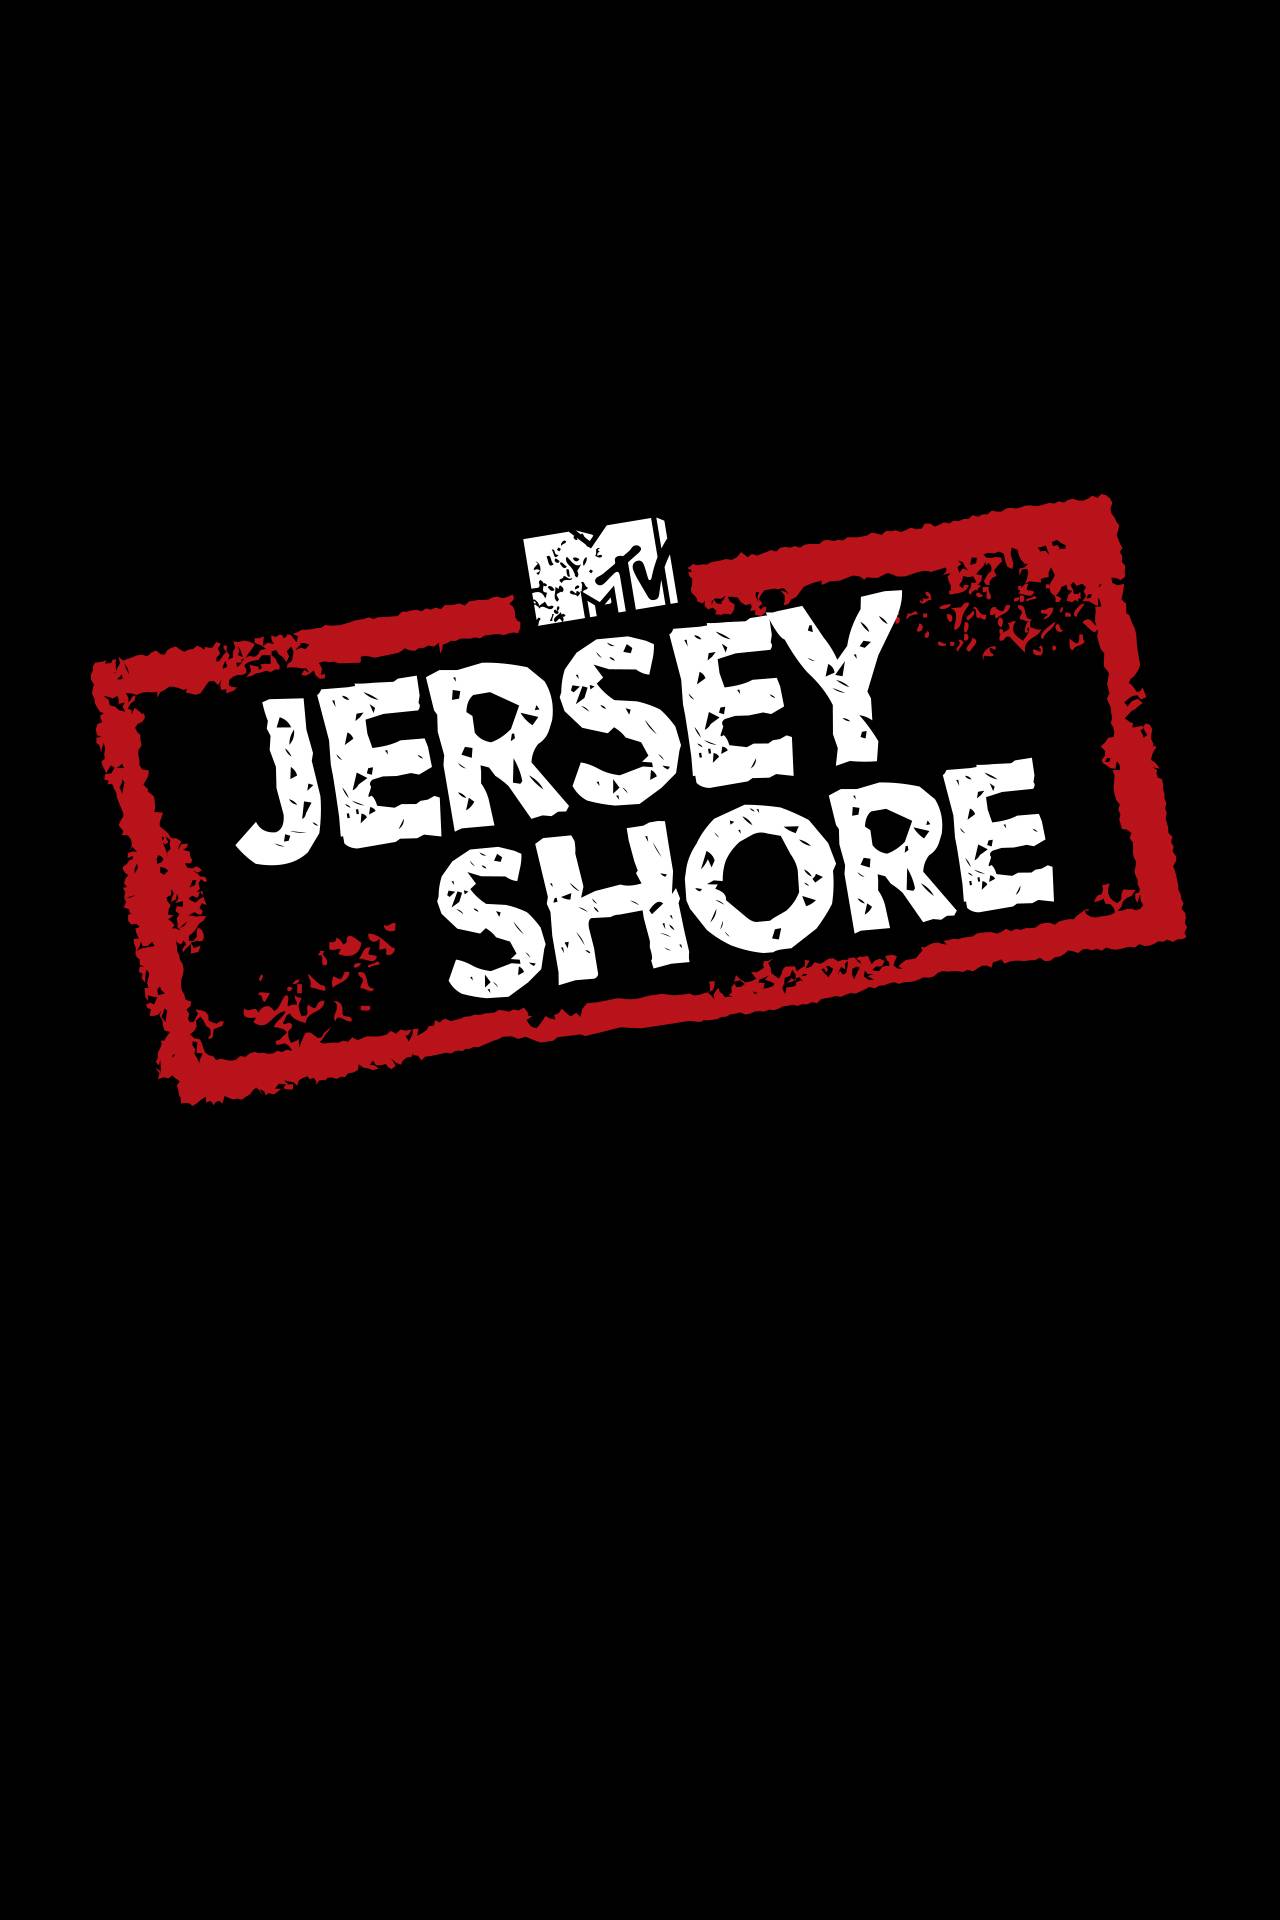 Zich verzetten tegen Bad gesloten Jersey Shore - TV Series | MTV